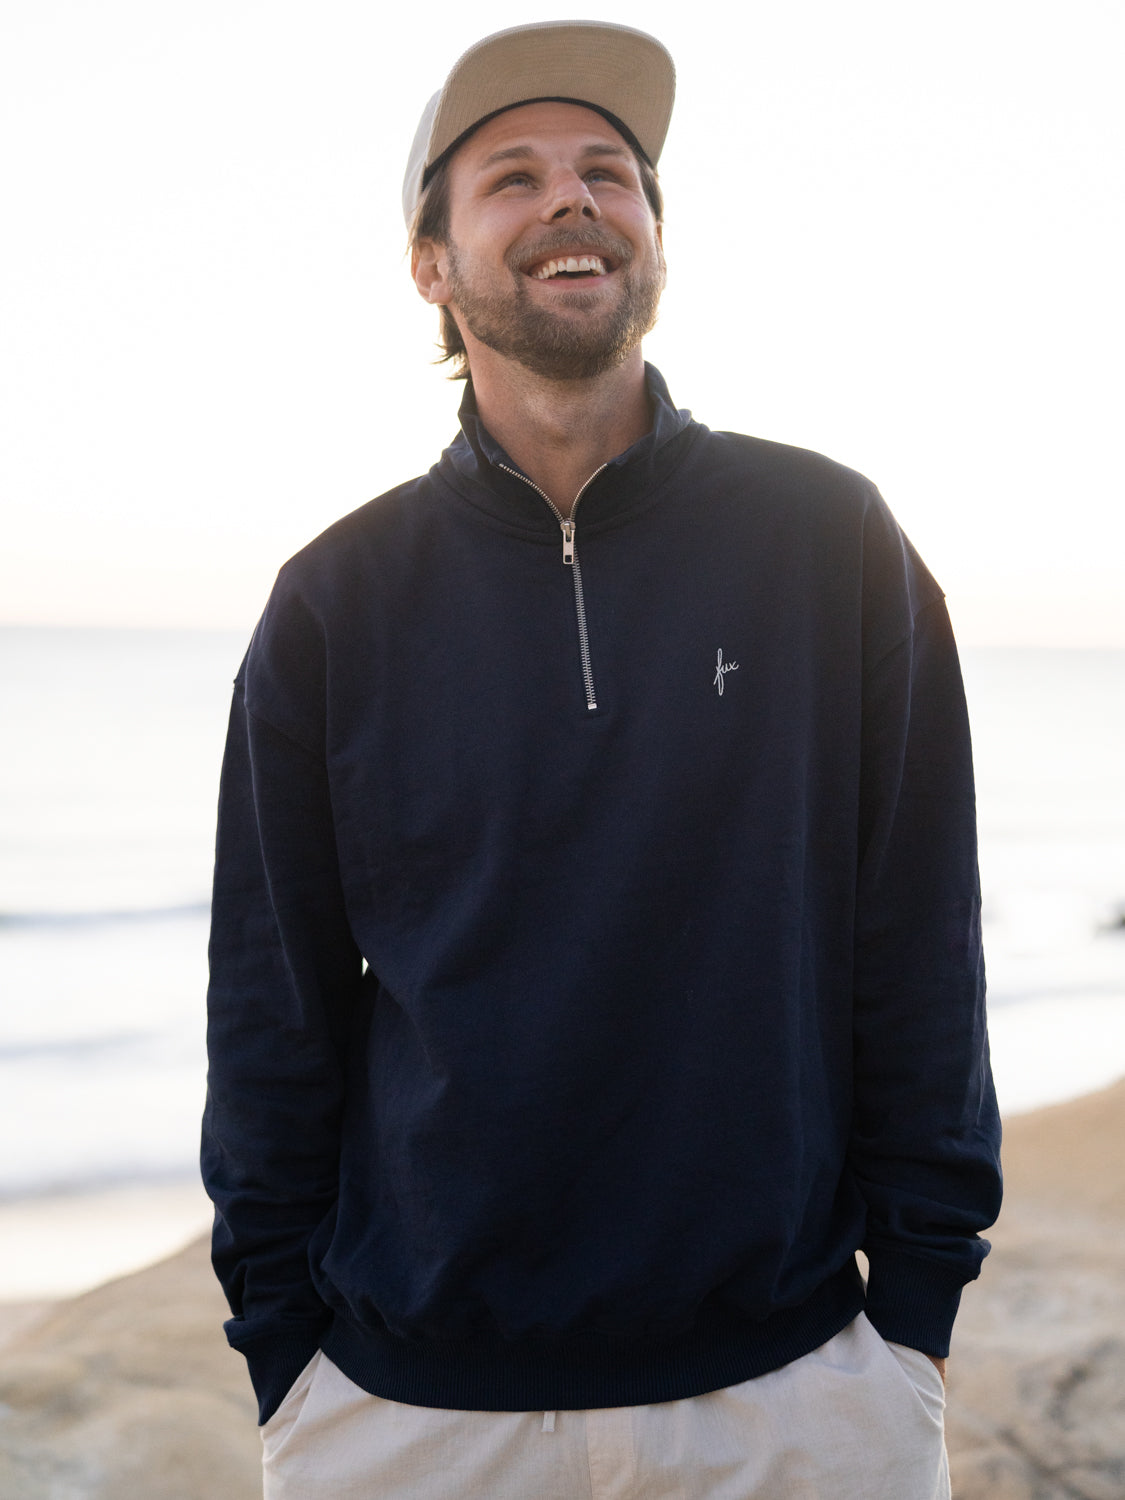 Nachhaltiger Half Zip Sweater in navy von FUXBAU aus Biobaumwolle getragen am Strand von Philipp in Spanien.